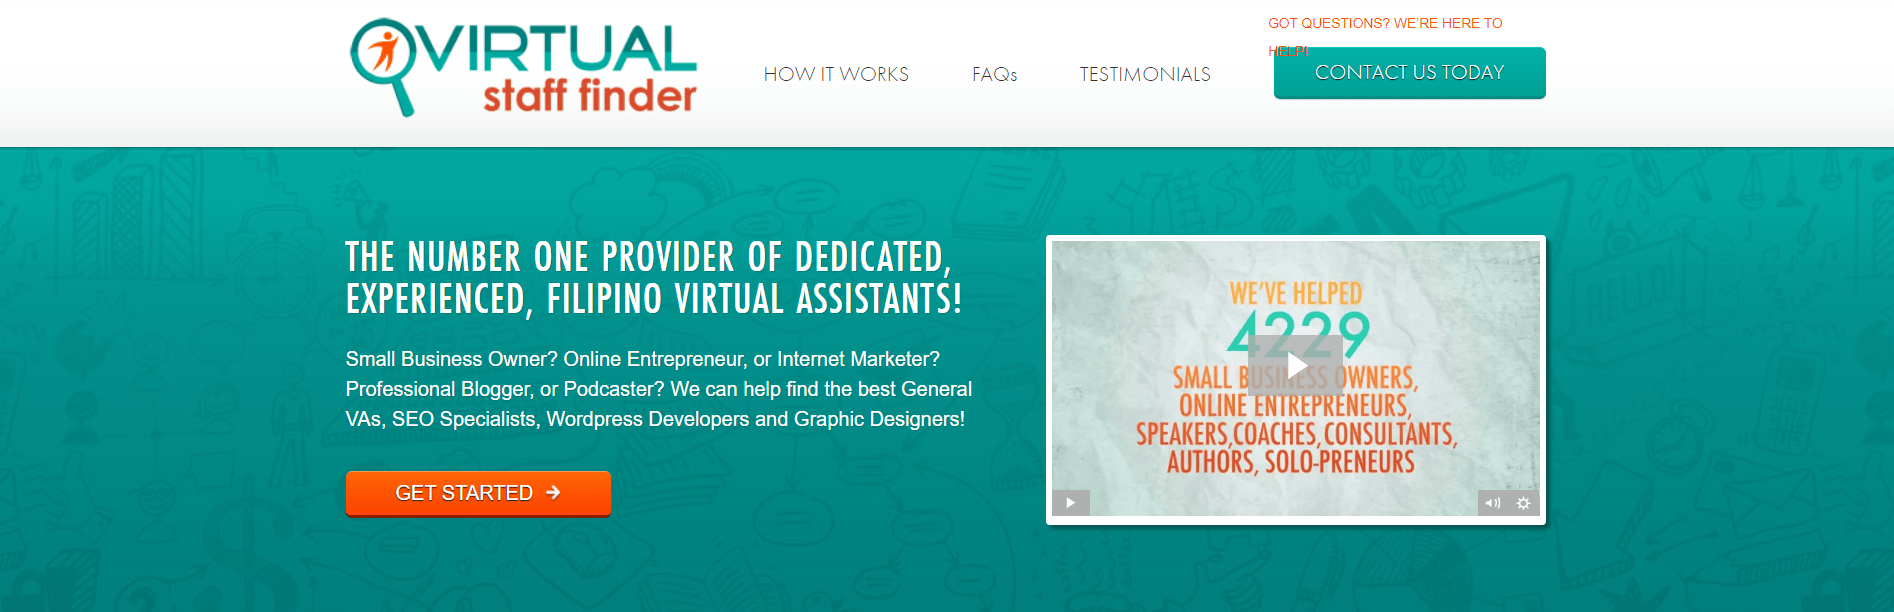 virtual staff finder